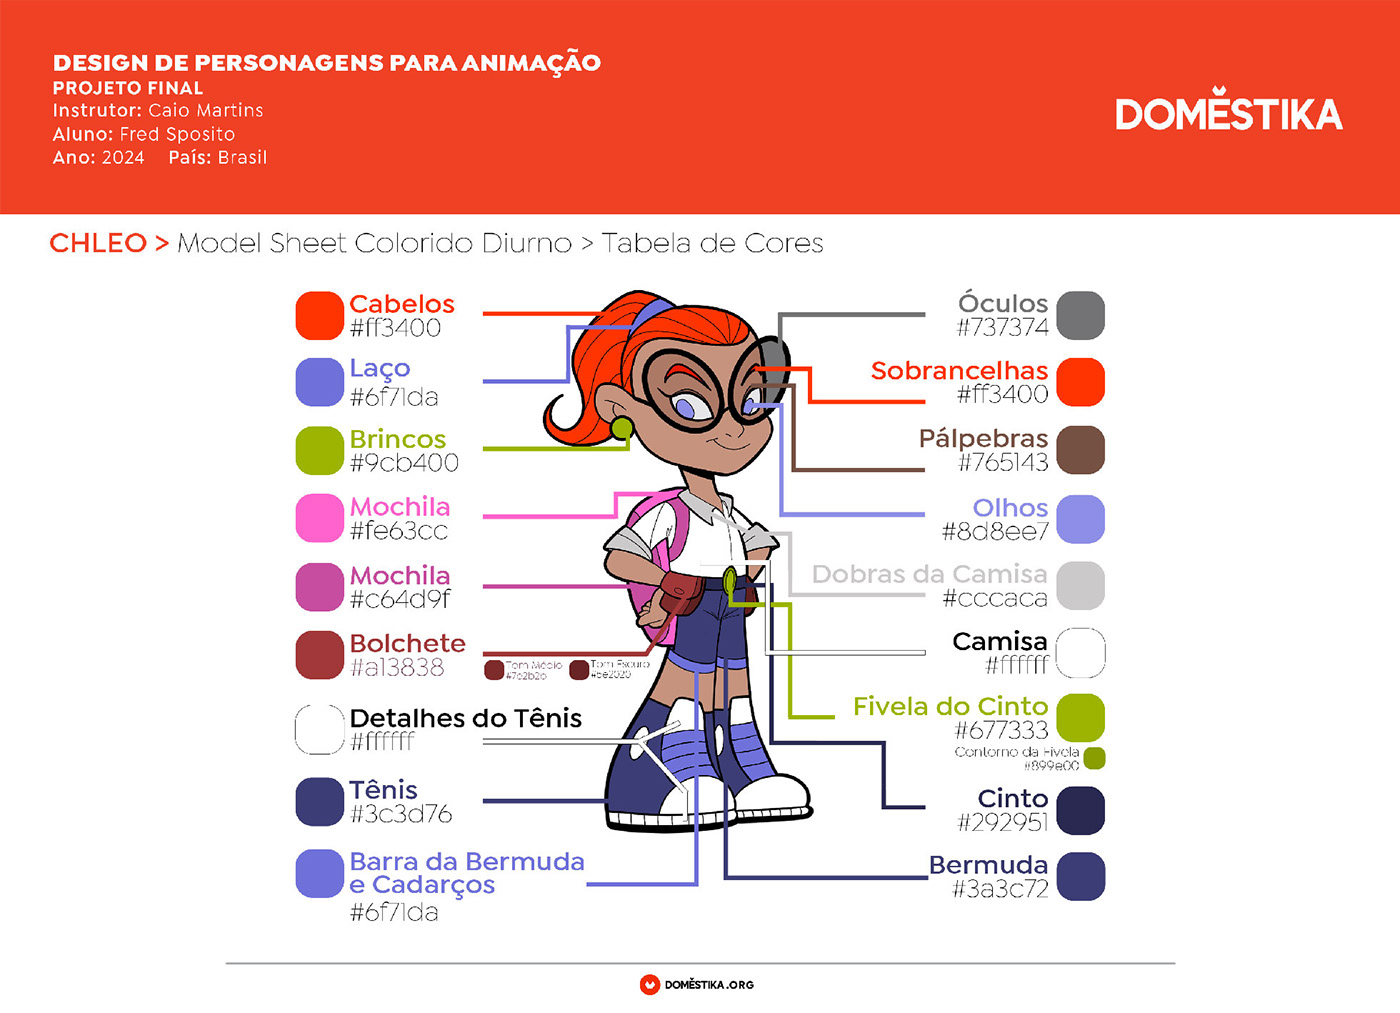 design animação animation  photoshop disney dreamworks domestika desenho desenhtsta design de personagens